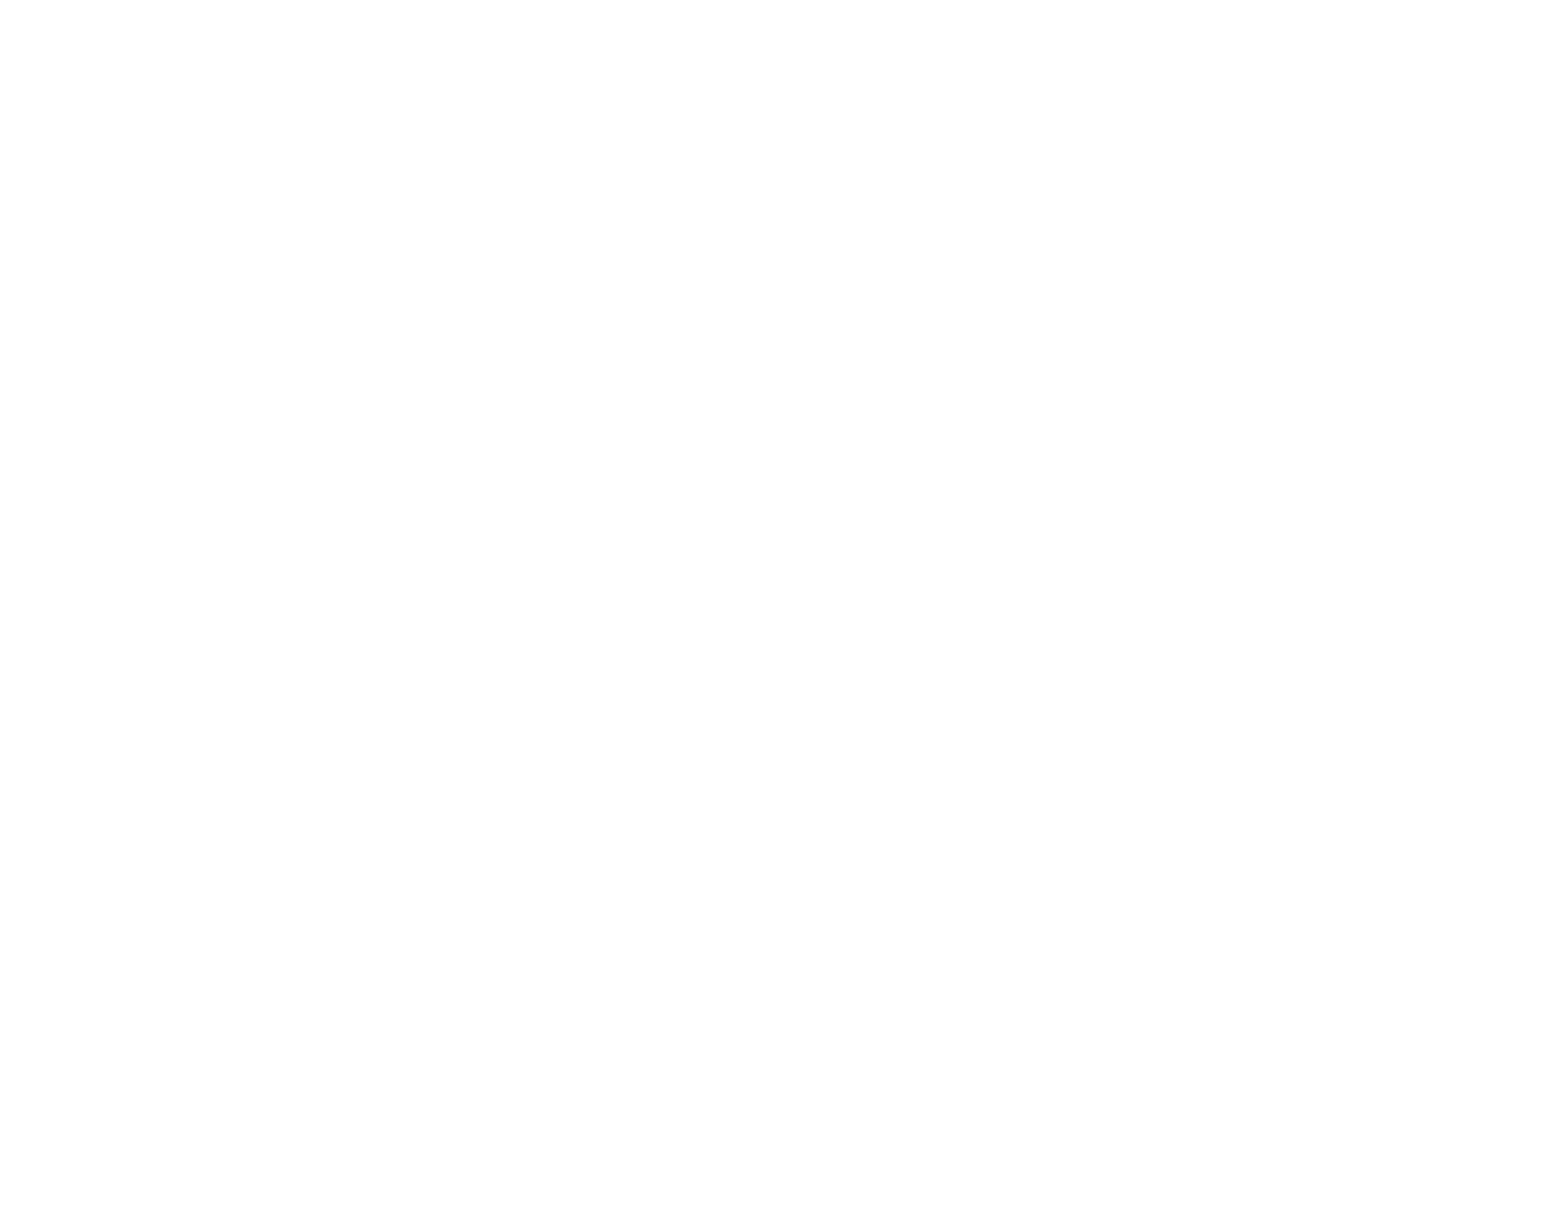 Genus logo grand pour les fonds sombres (PNG transparent)